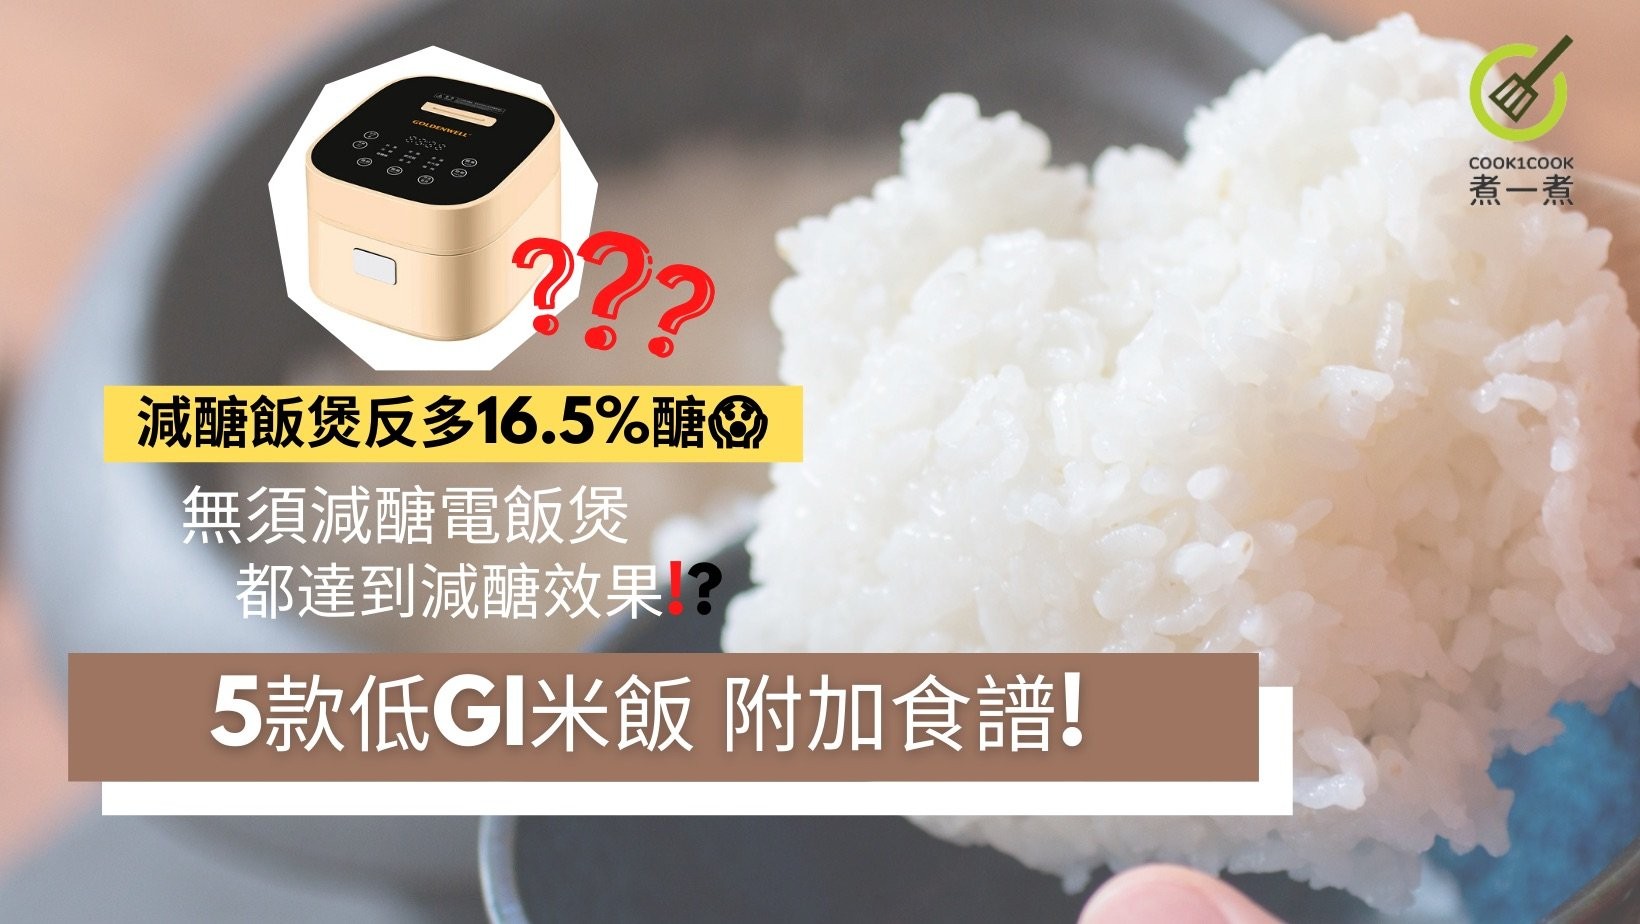 消費會指出減醣飯煲米飯反多16.5%醣? | 5款低GI米飯 附加食譜